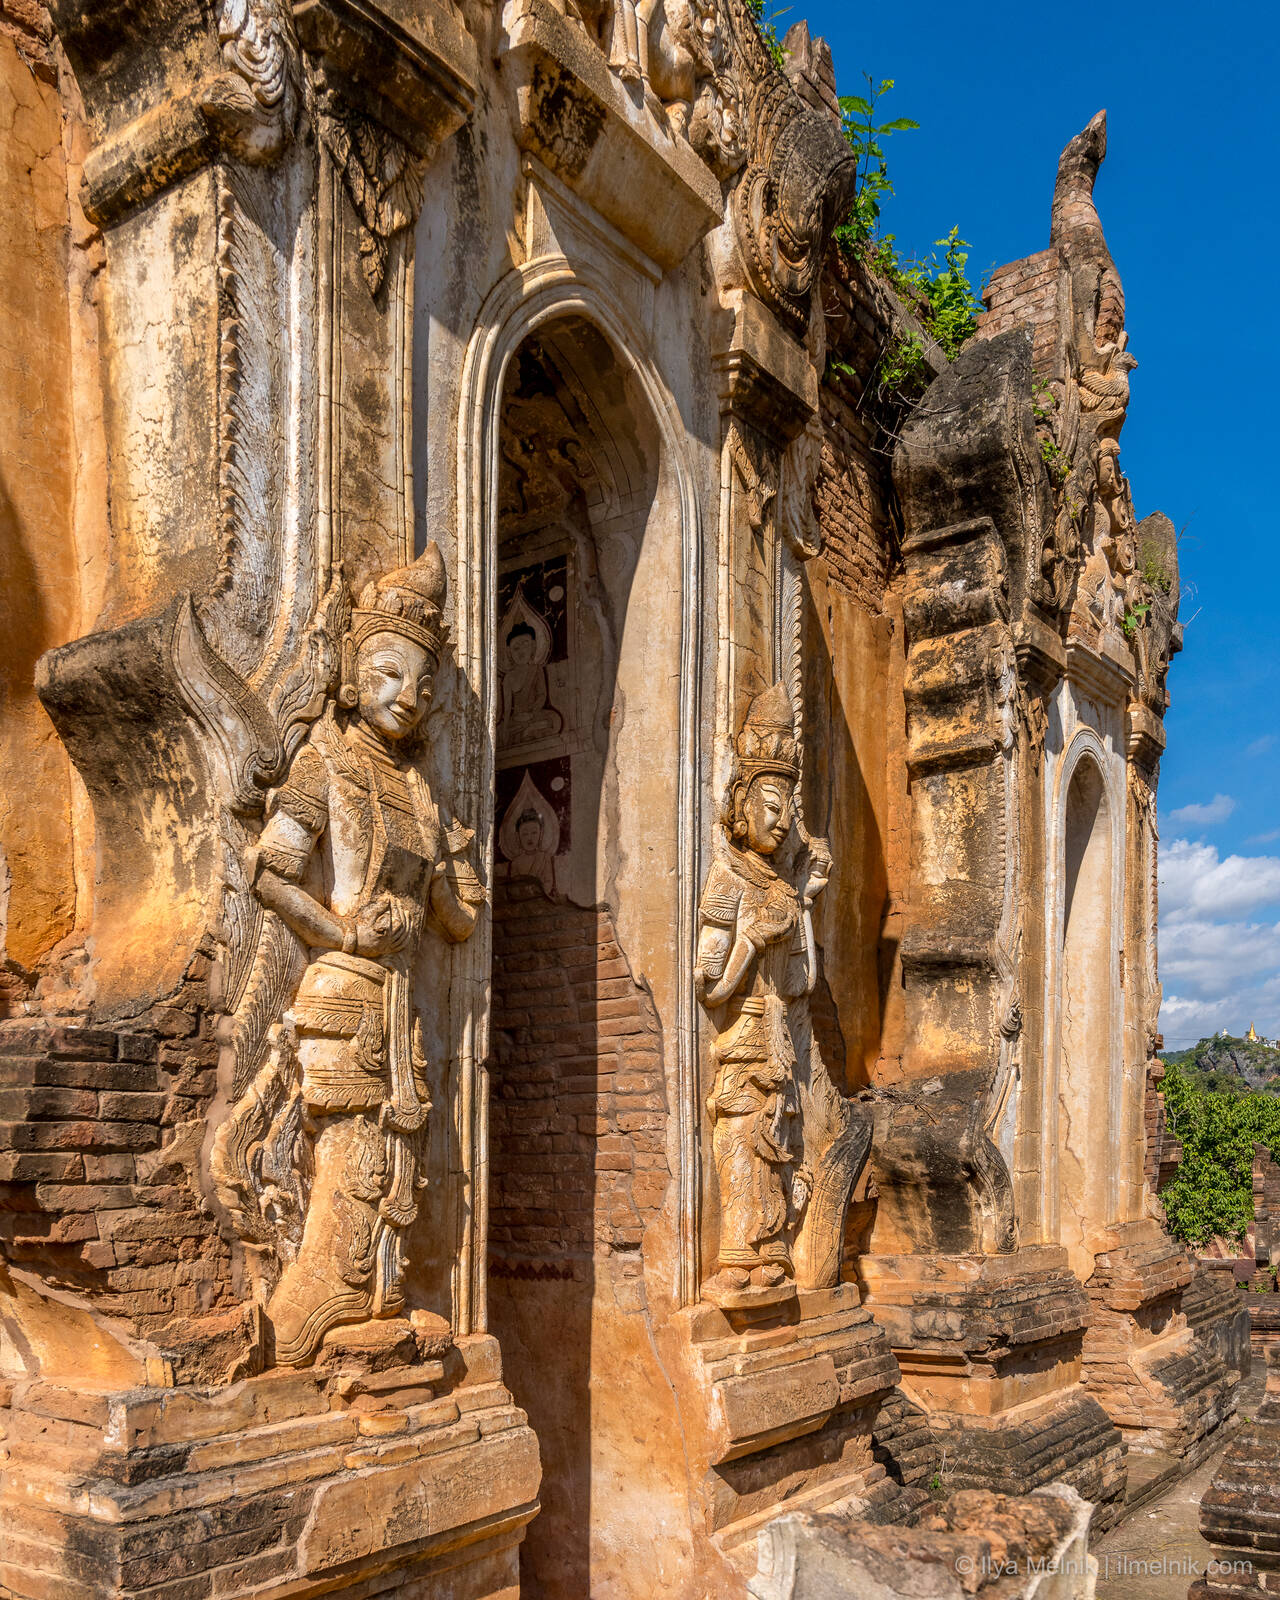 Image of Shwe Indein Pagoda by Ilya Melnik